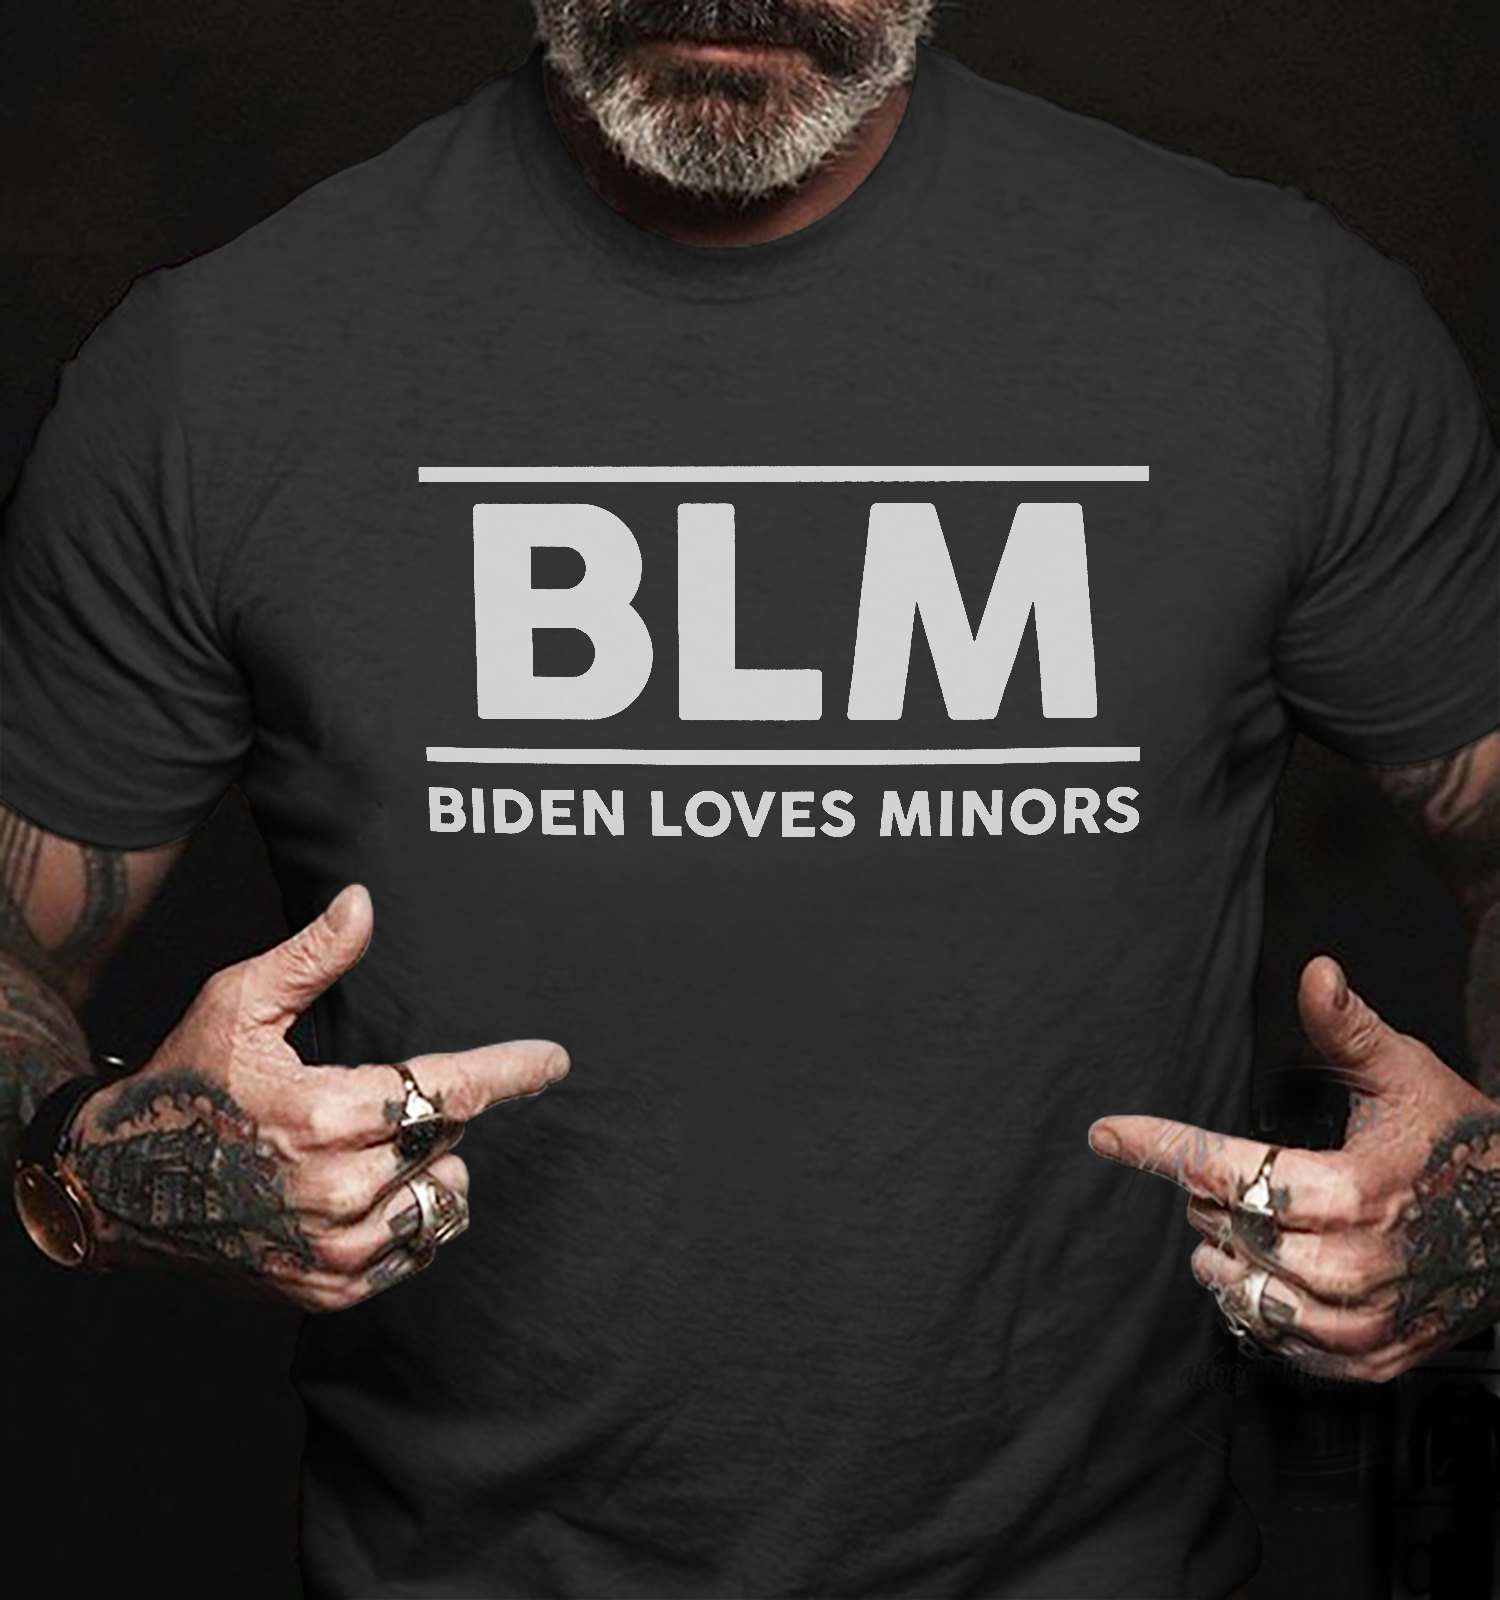 BLM Biden loves minors